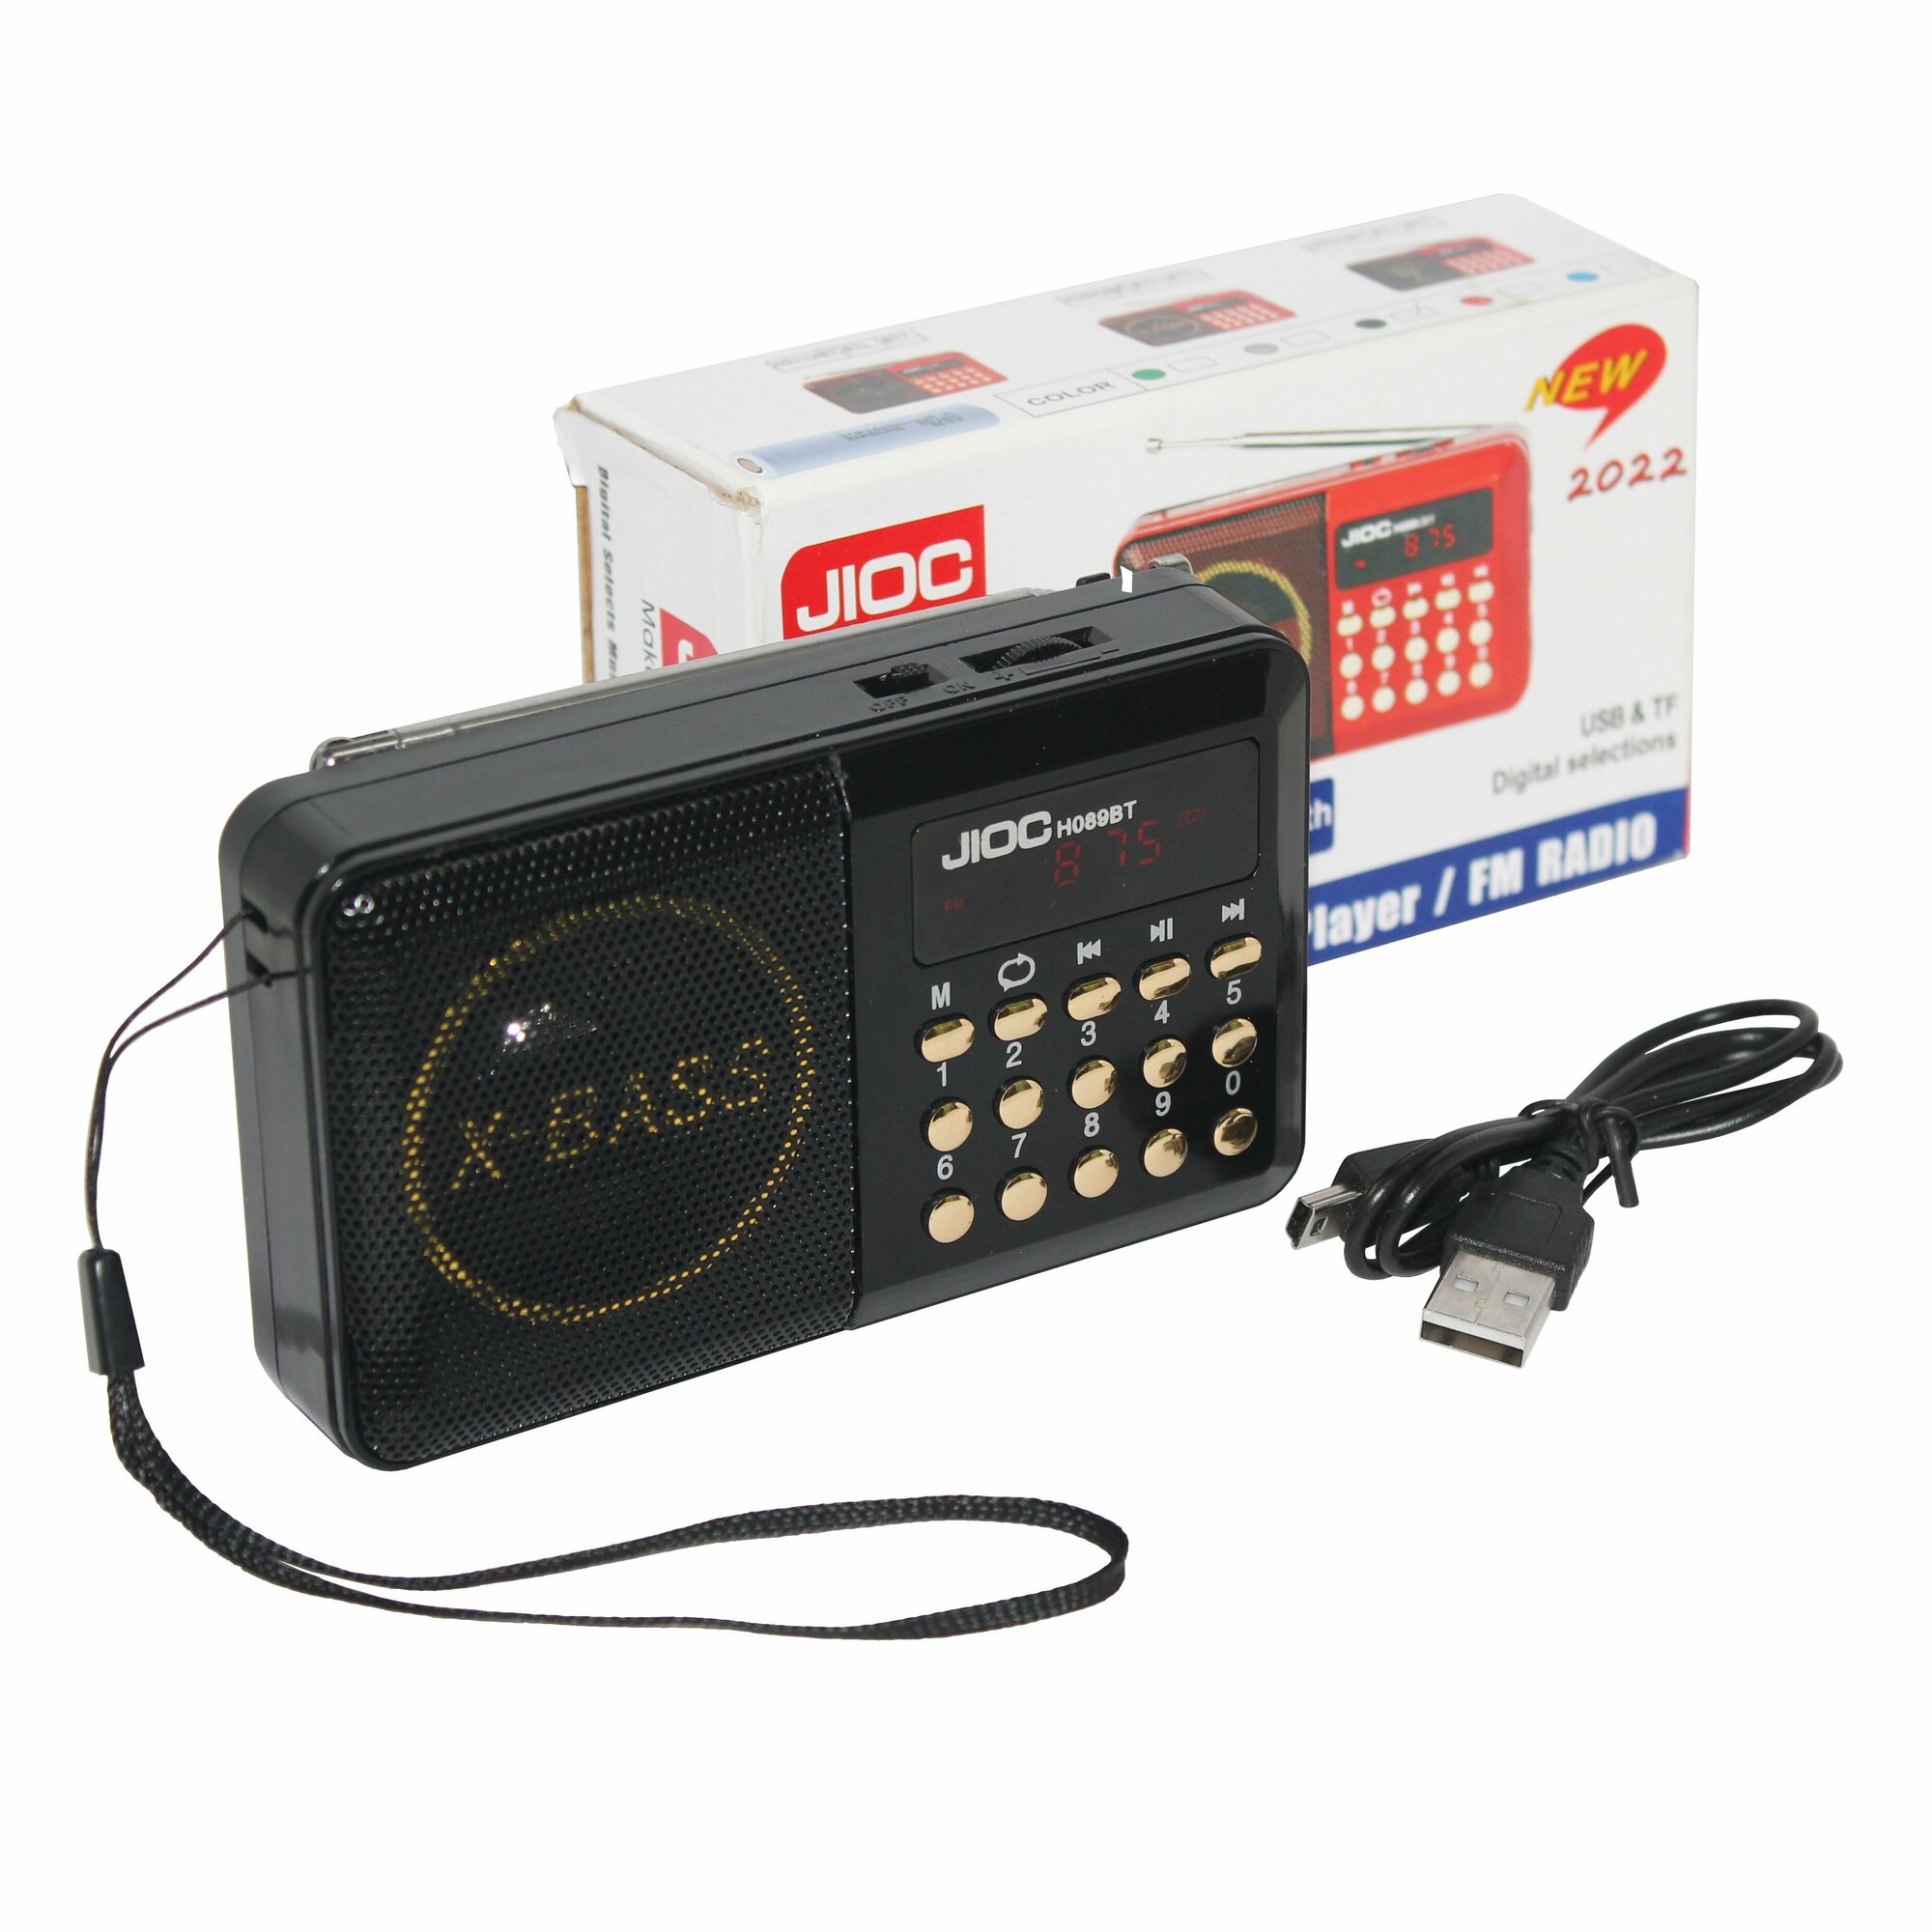 Компактный цифровой FM радиоприёмник Jioc H089BT со встроенным MP3 плеером и функционалом Bluetooth акустики